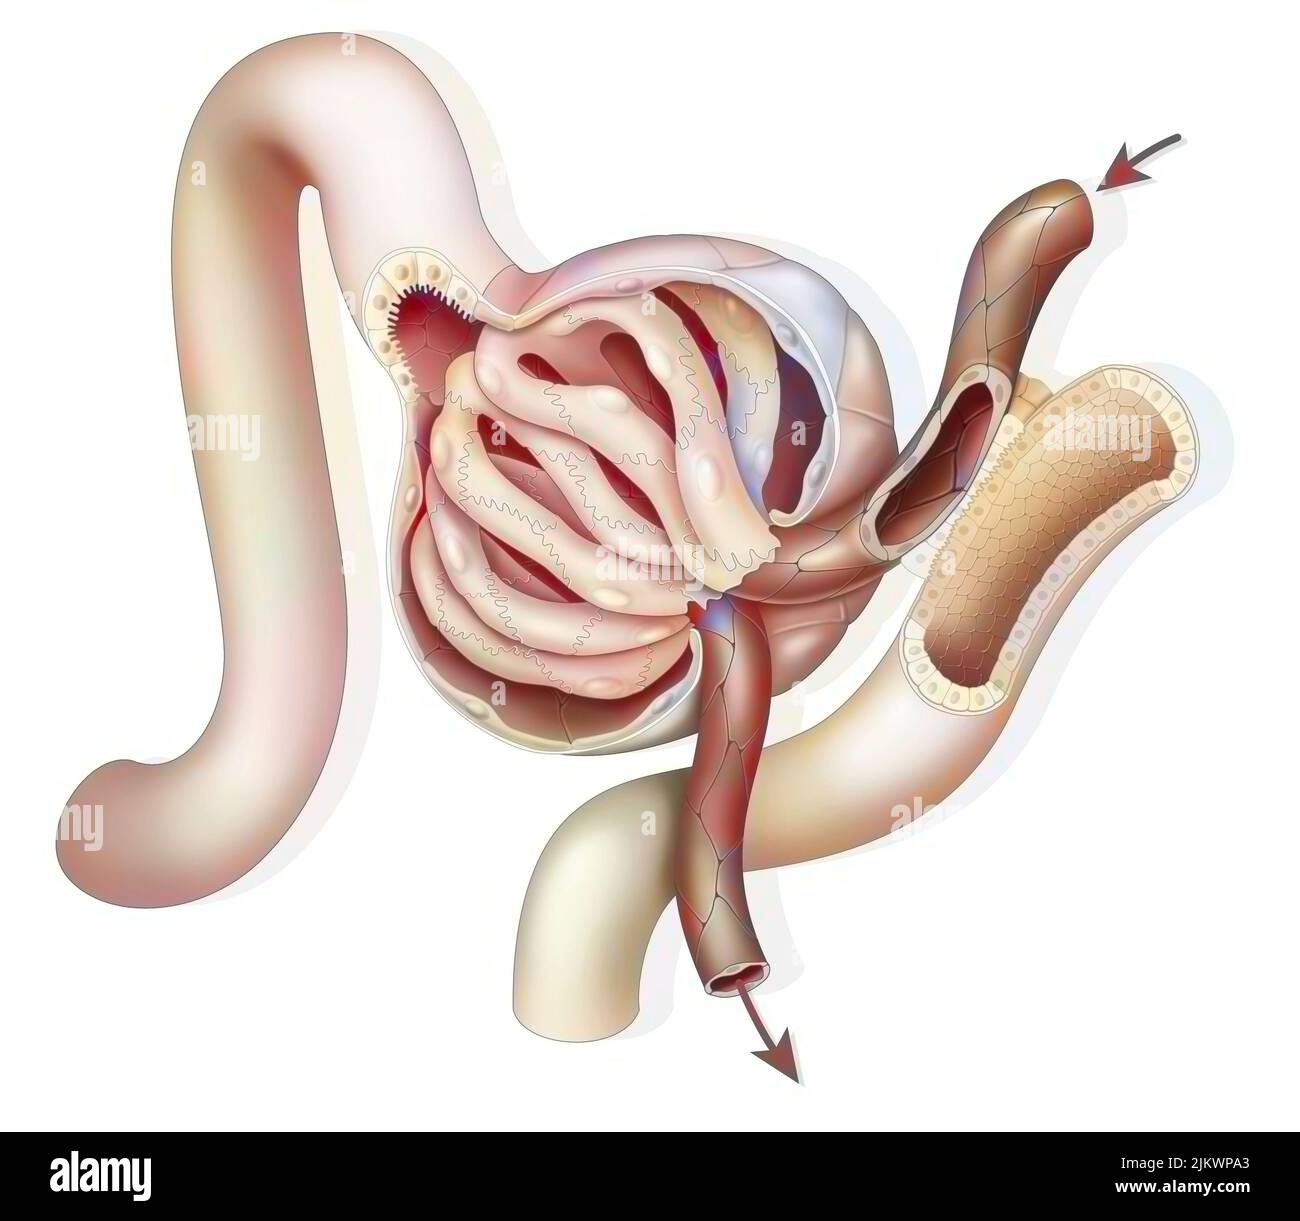 Anatomia di un glomerulo renale con arteriolo glomerulare afferente ed efferente. Foto Stock